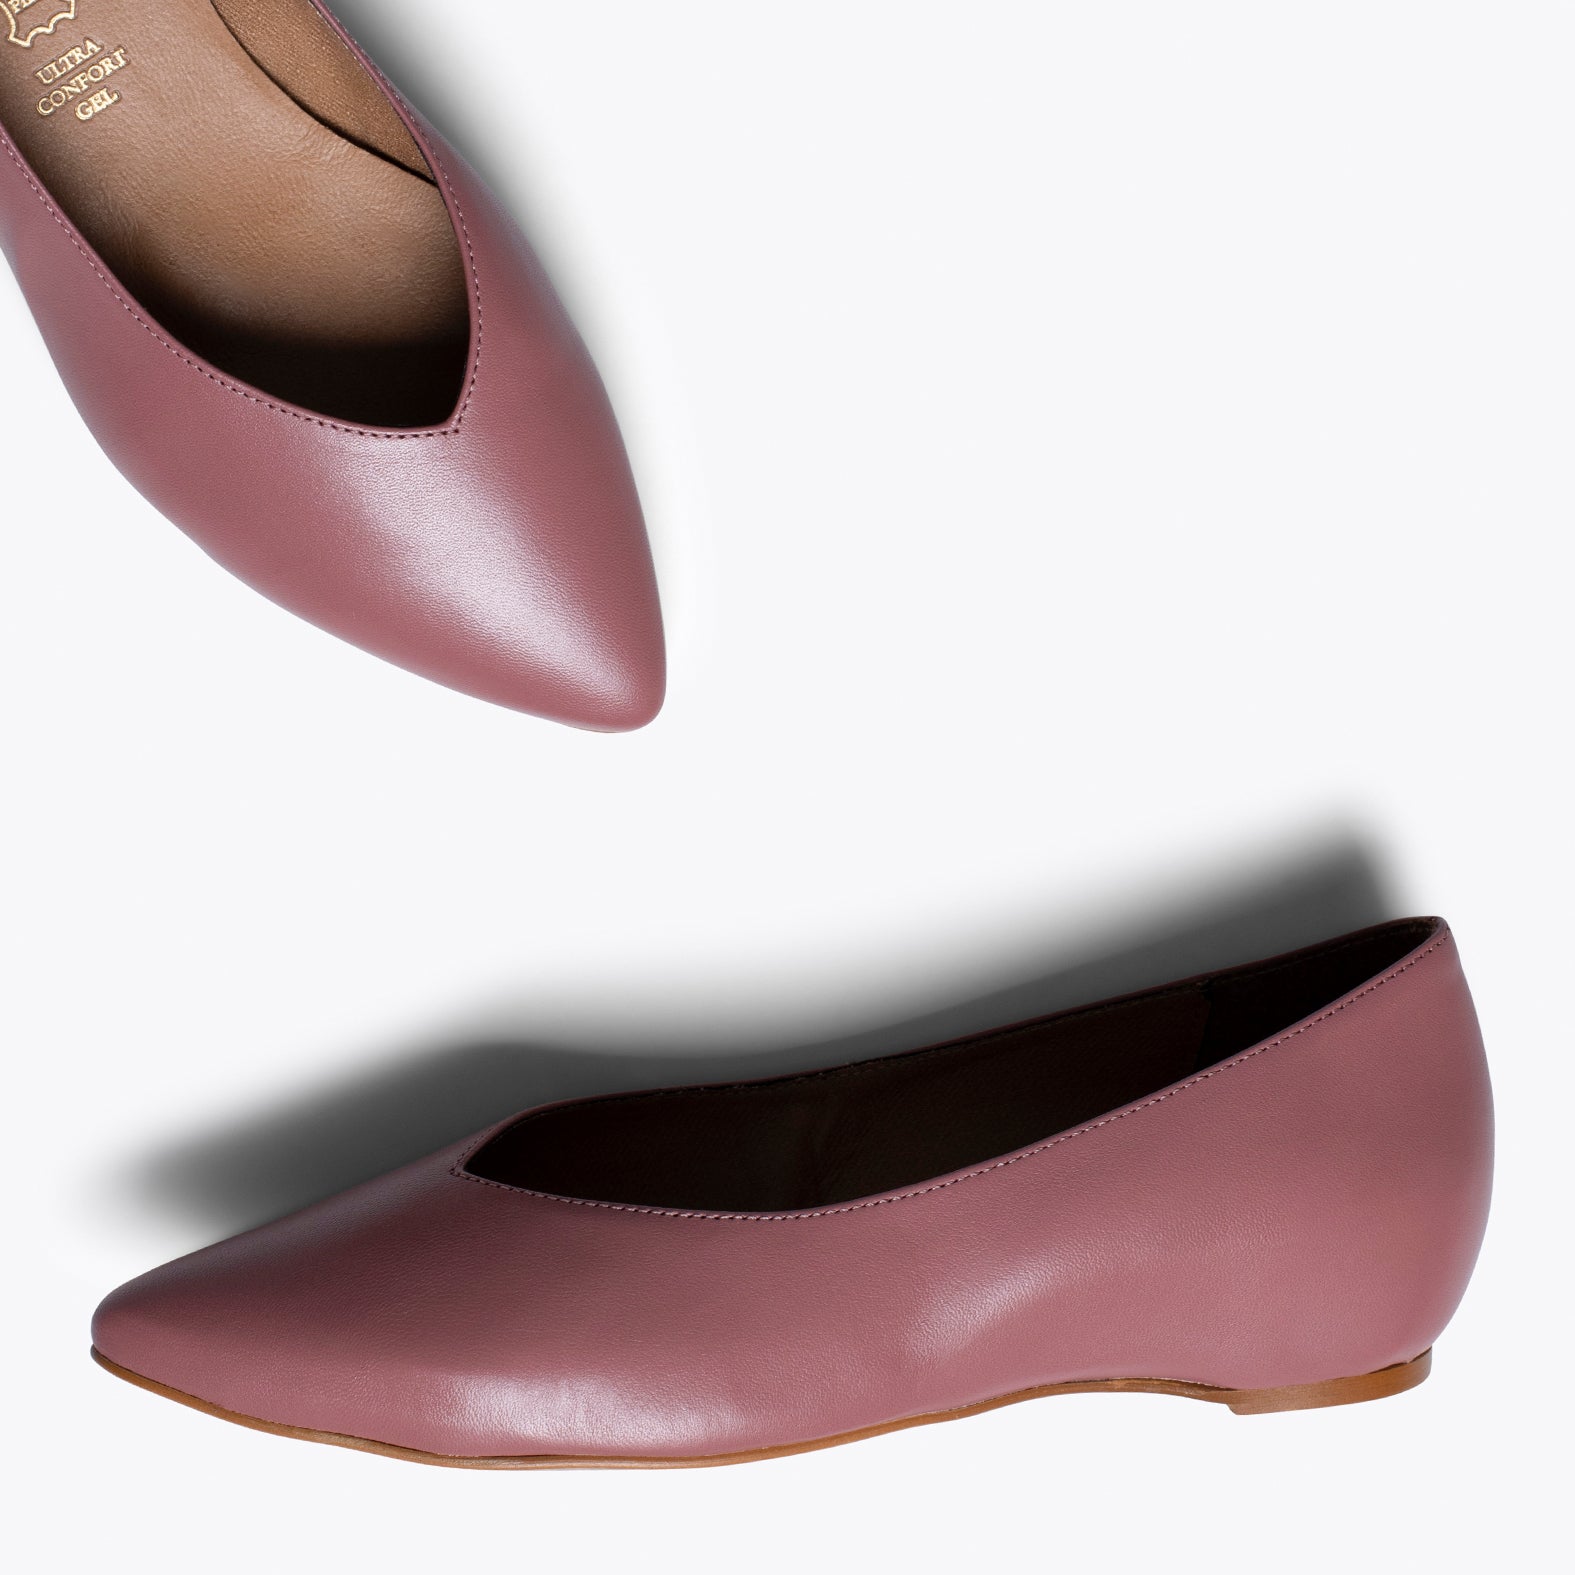 URBAN COMPENSÉ – Chaussures ROSE avec compensé intérieur